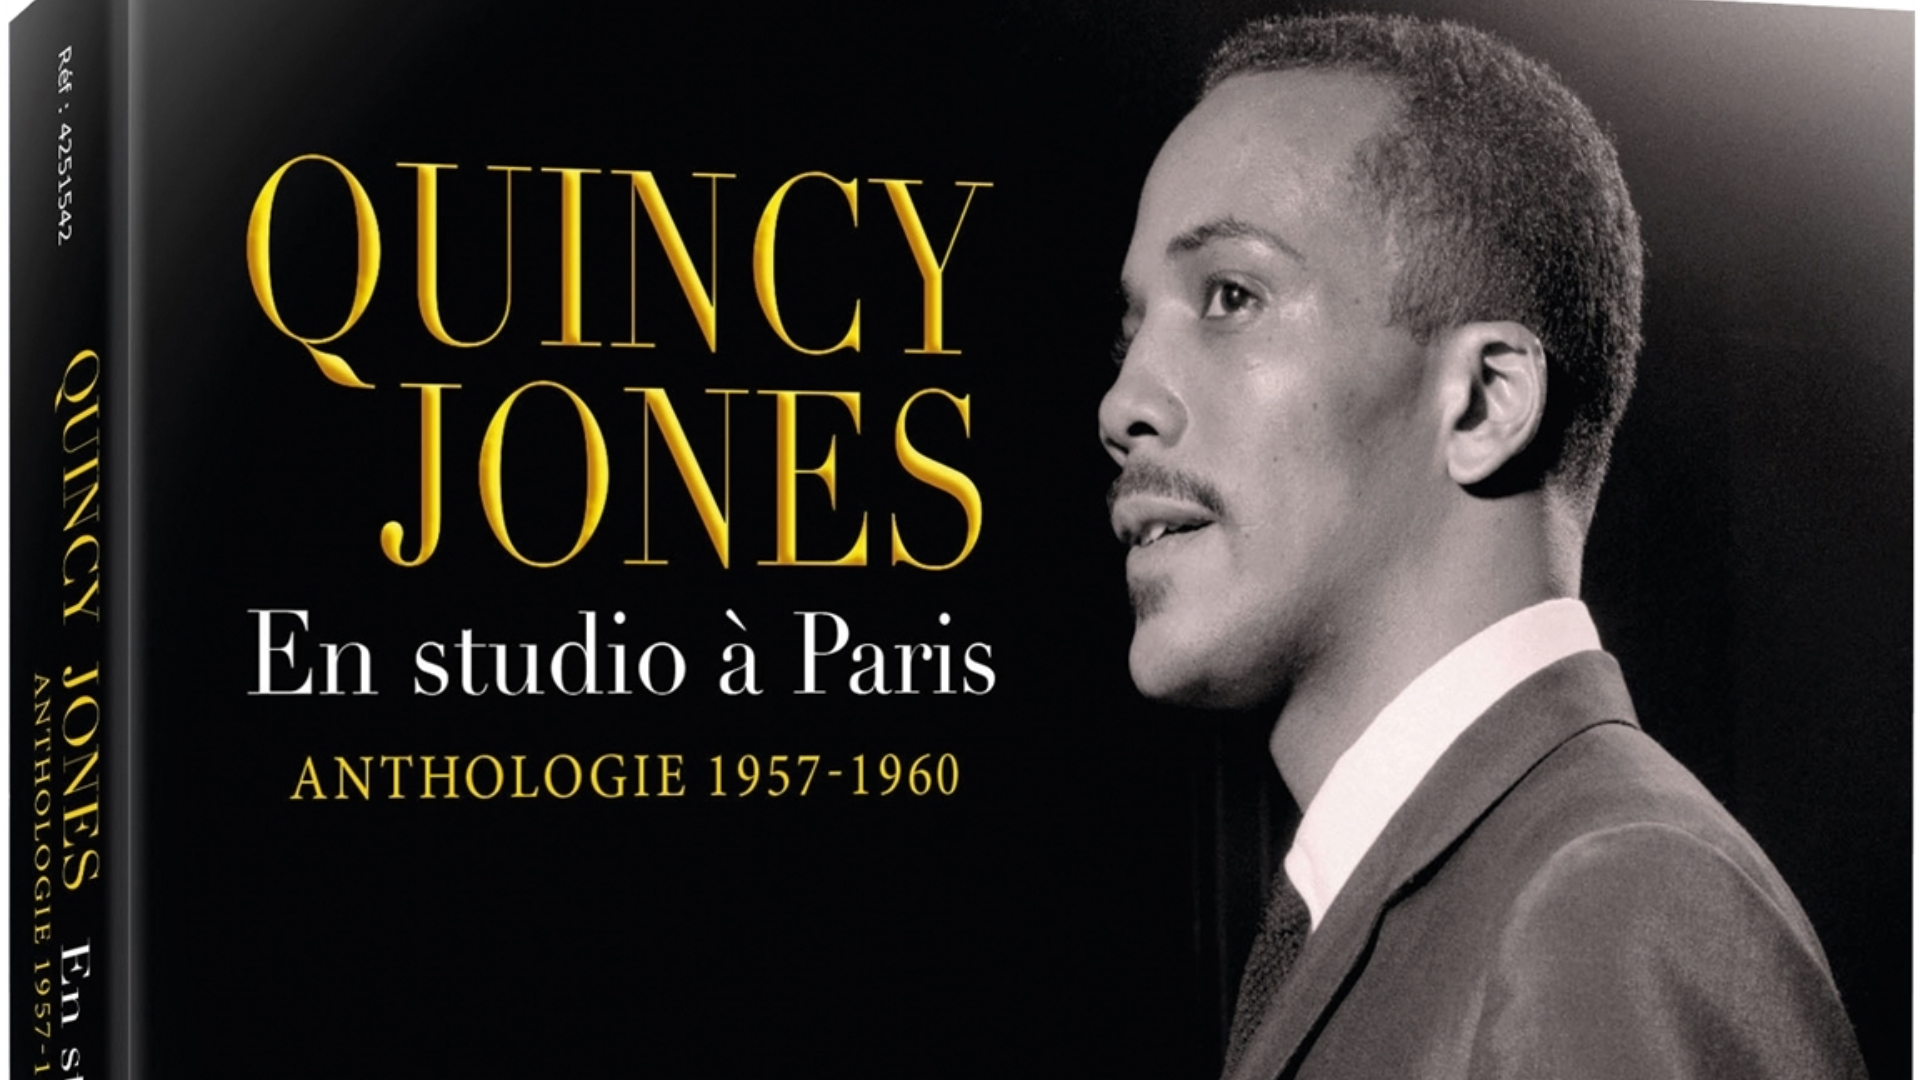 Découvrez l'anthologie de Quincy Jones !